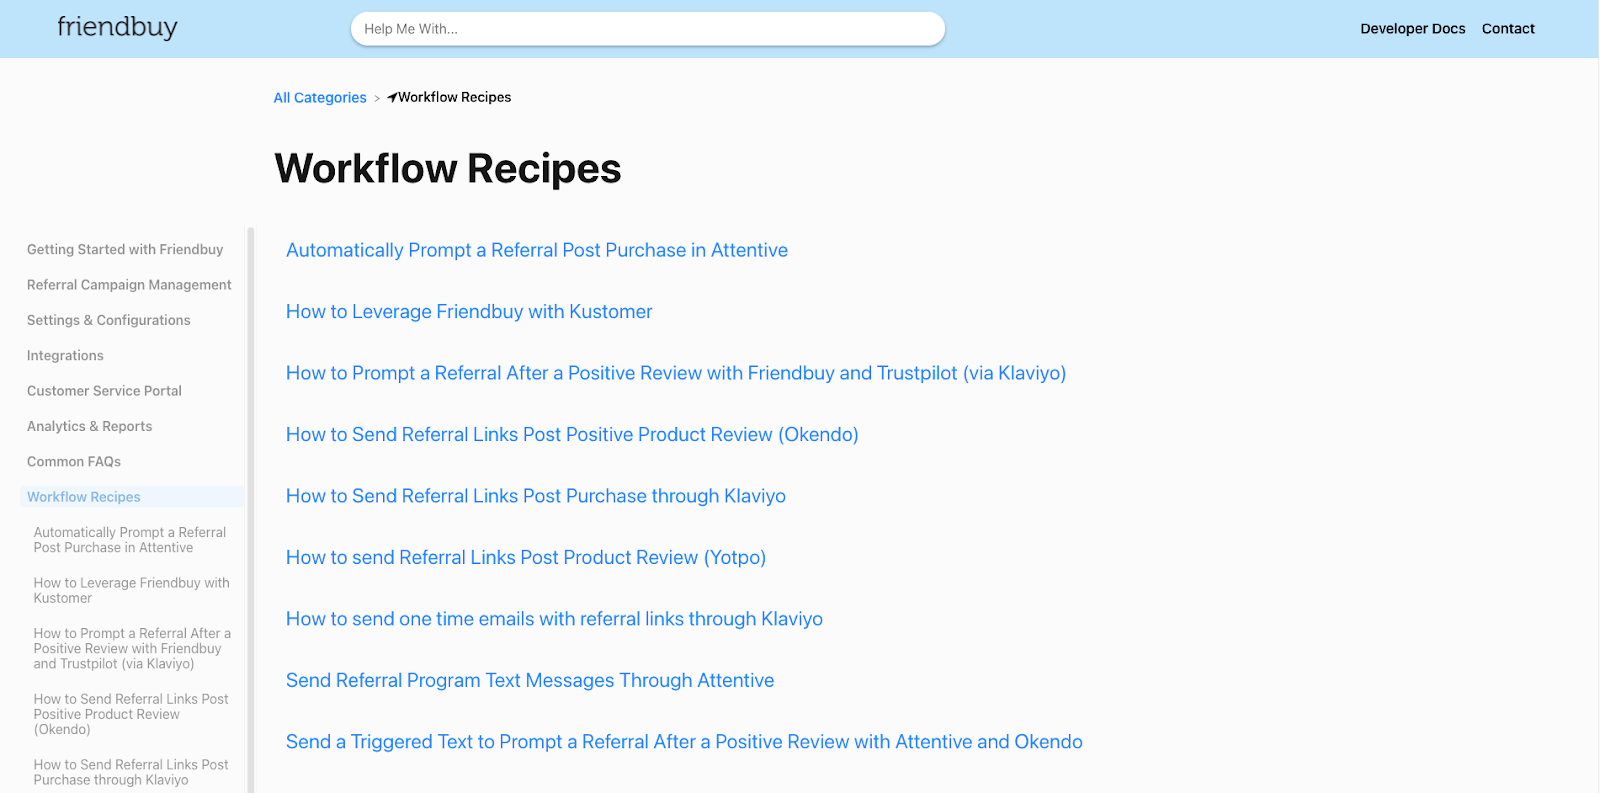 friendbuy-workflow-recipes